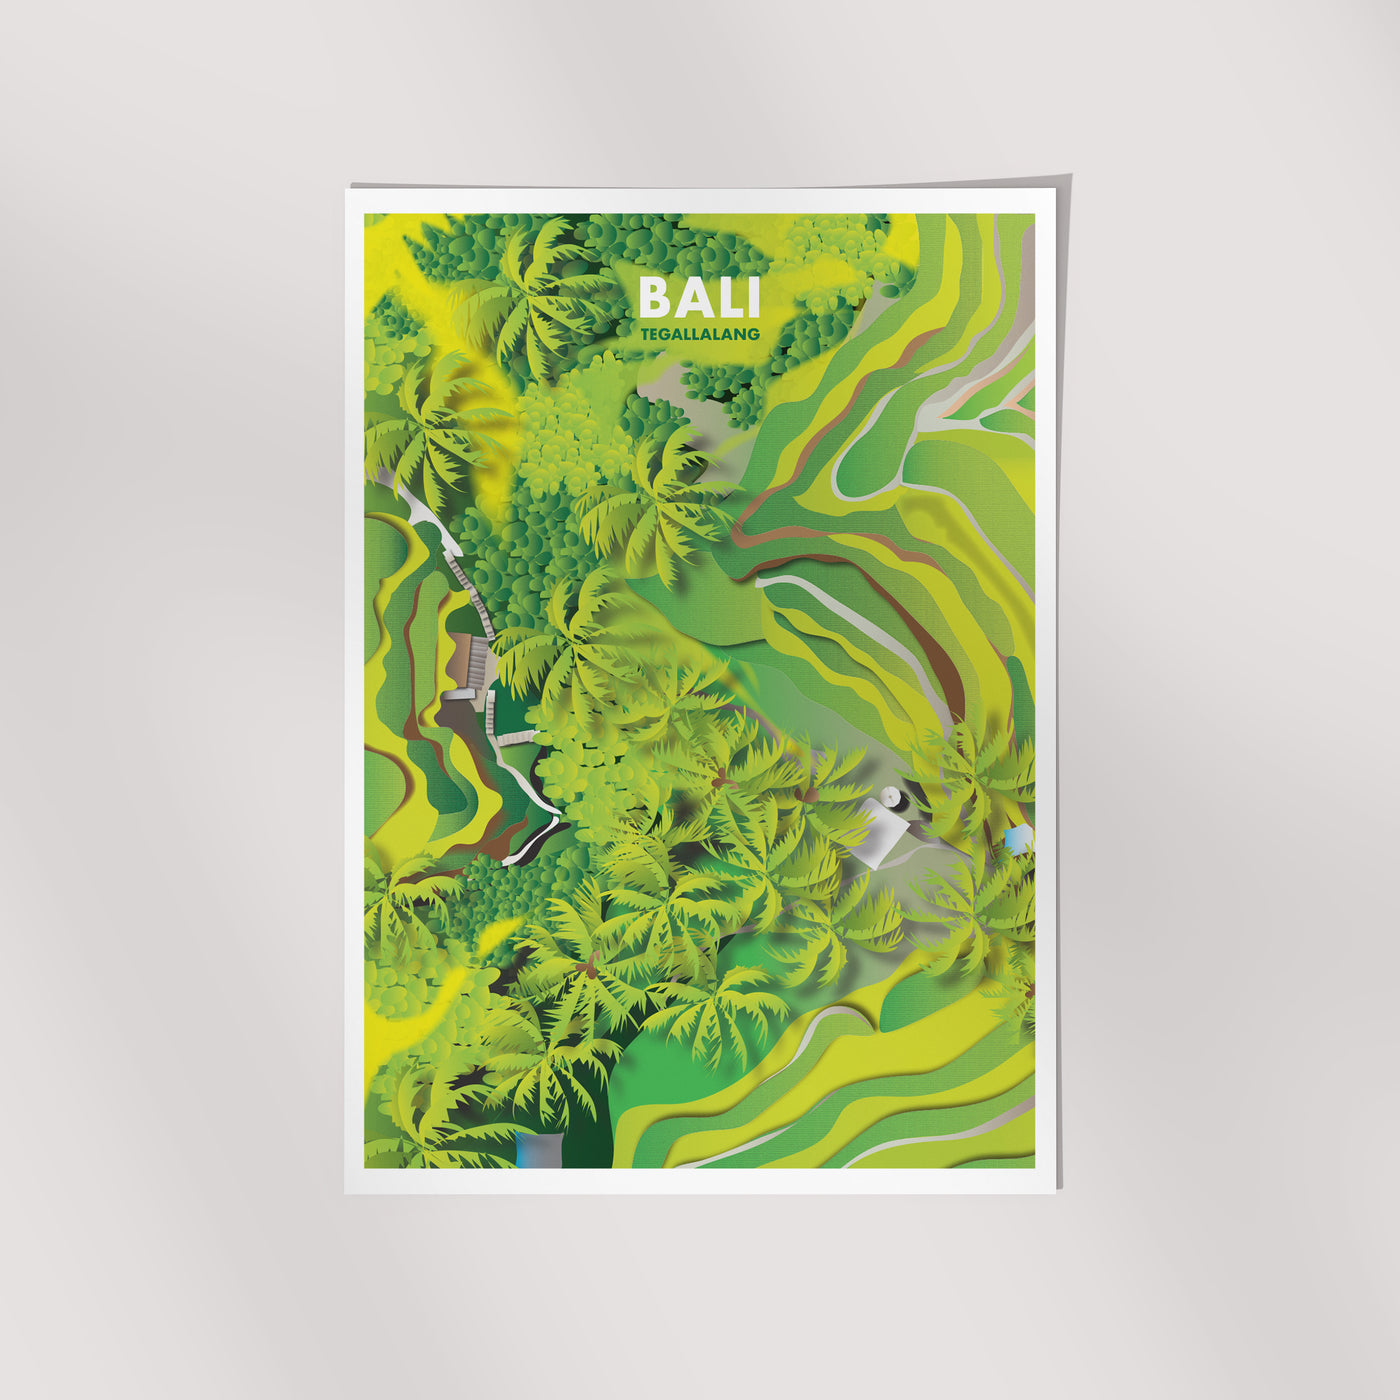 Bali - Tegallalang Illustrated Print